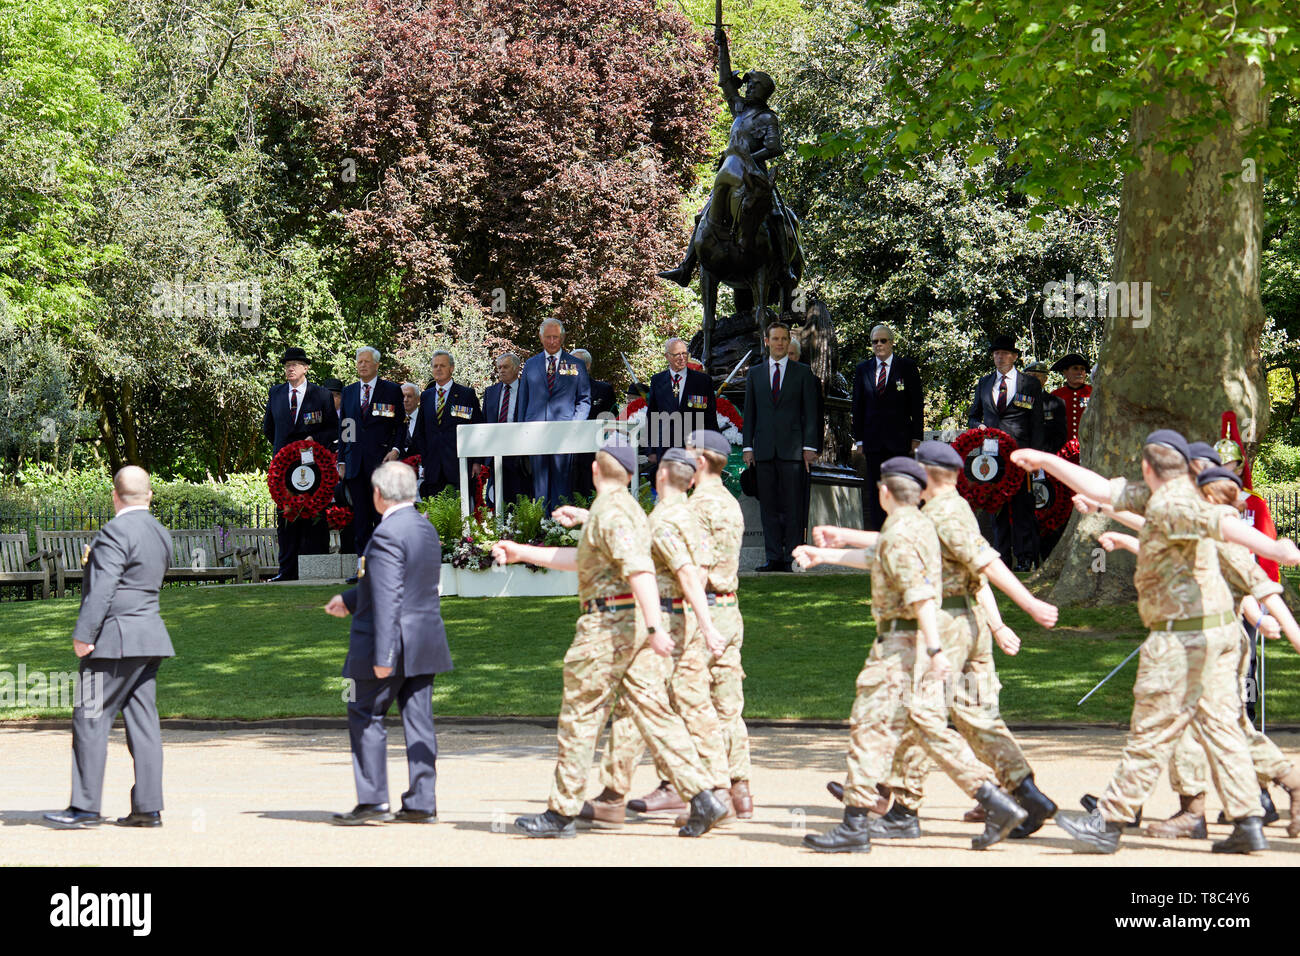 Londres, Royaume-Uni - 12 mai 2019 : Son Altesse Royale le Prince de Galles inspecte les cavaliers passés et présents dans le cadre de la 94e parade annuelle de l'Association anciens camarades de cavalerie dans Hyde Park. Banque D'Images